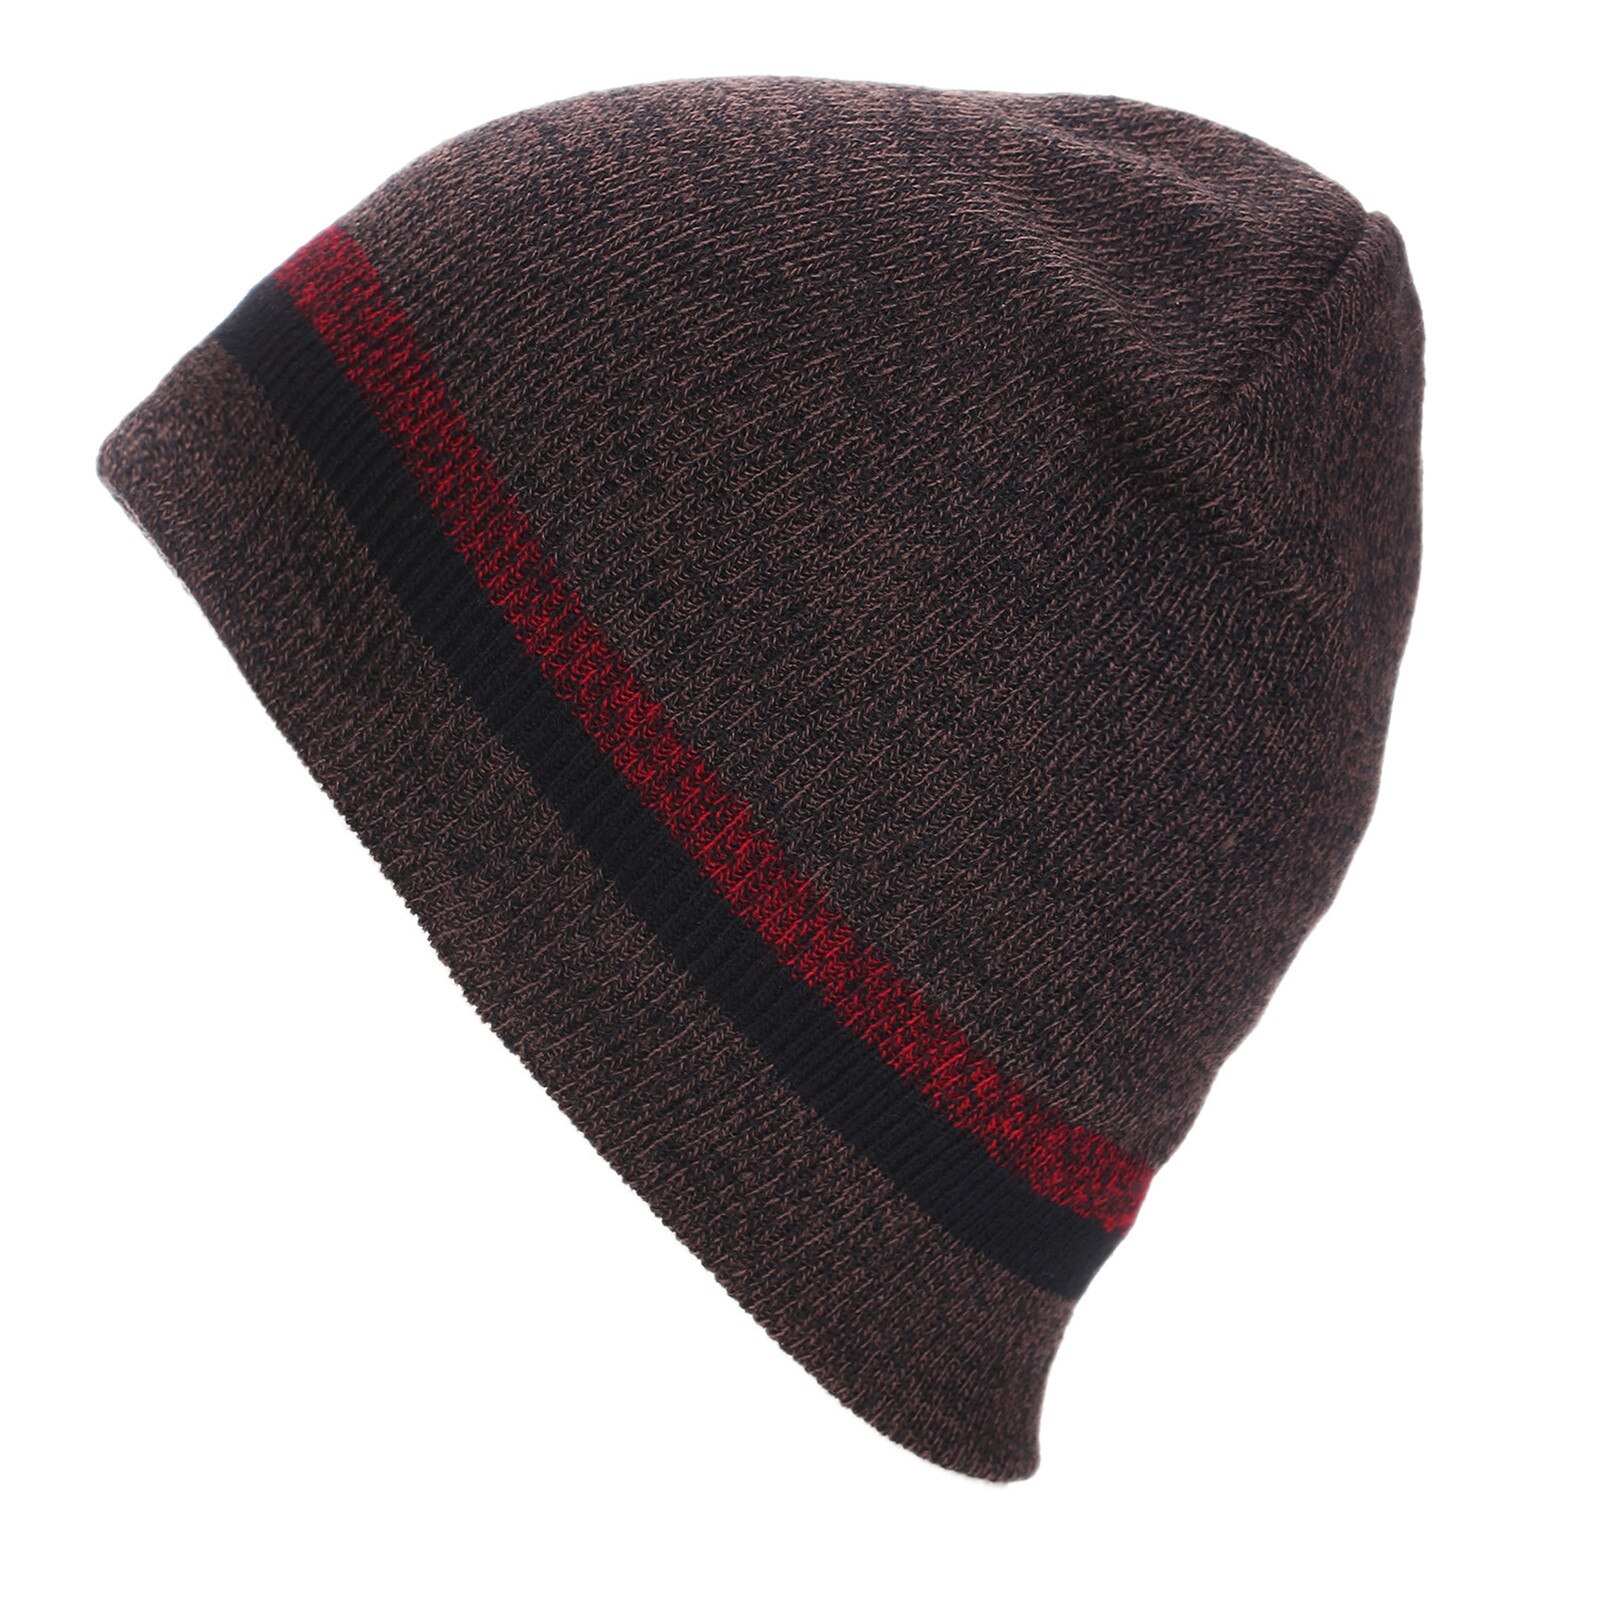 E cappello invernale alla moda cappello di lana lavorato a maglia paraorecchie spesse sci all'aperto ciclismo cappello caldo dolce E adorabile, caldo confortevole: BK